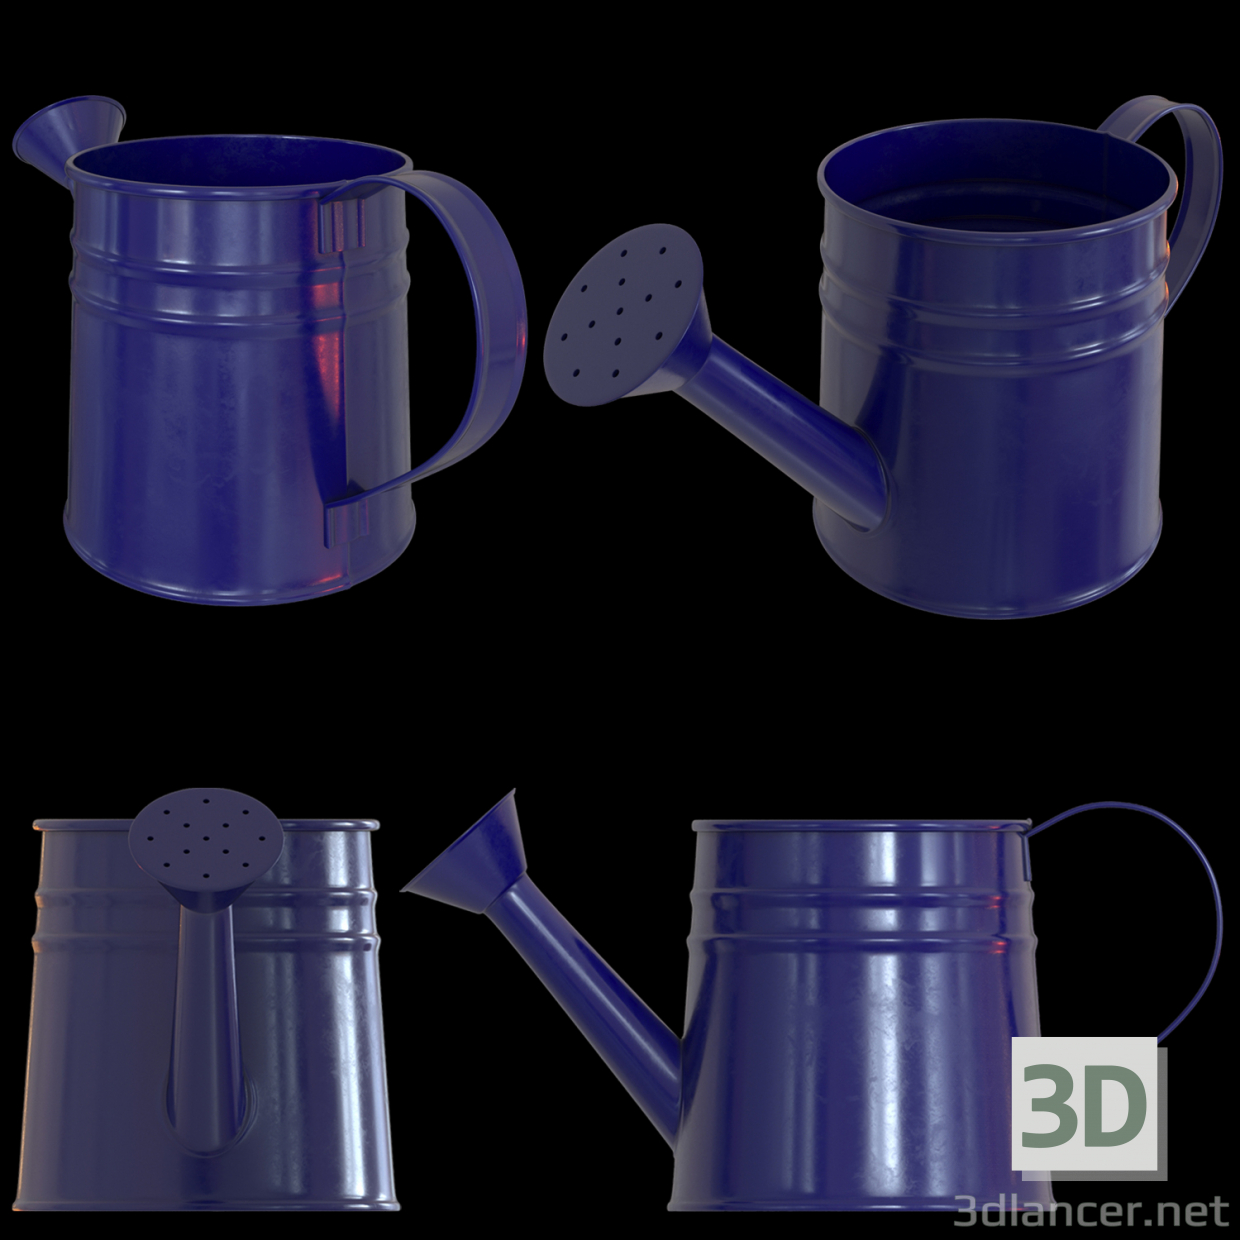 3d Watering can for children model buy - render